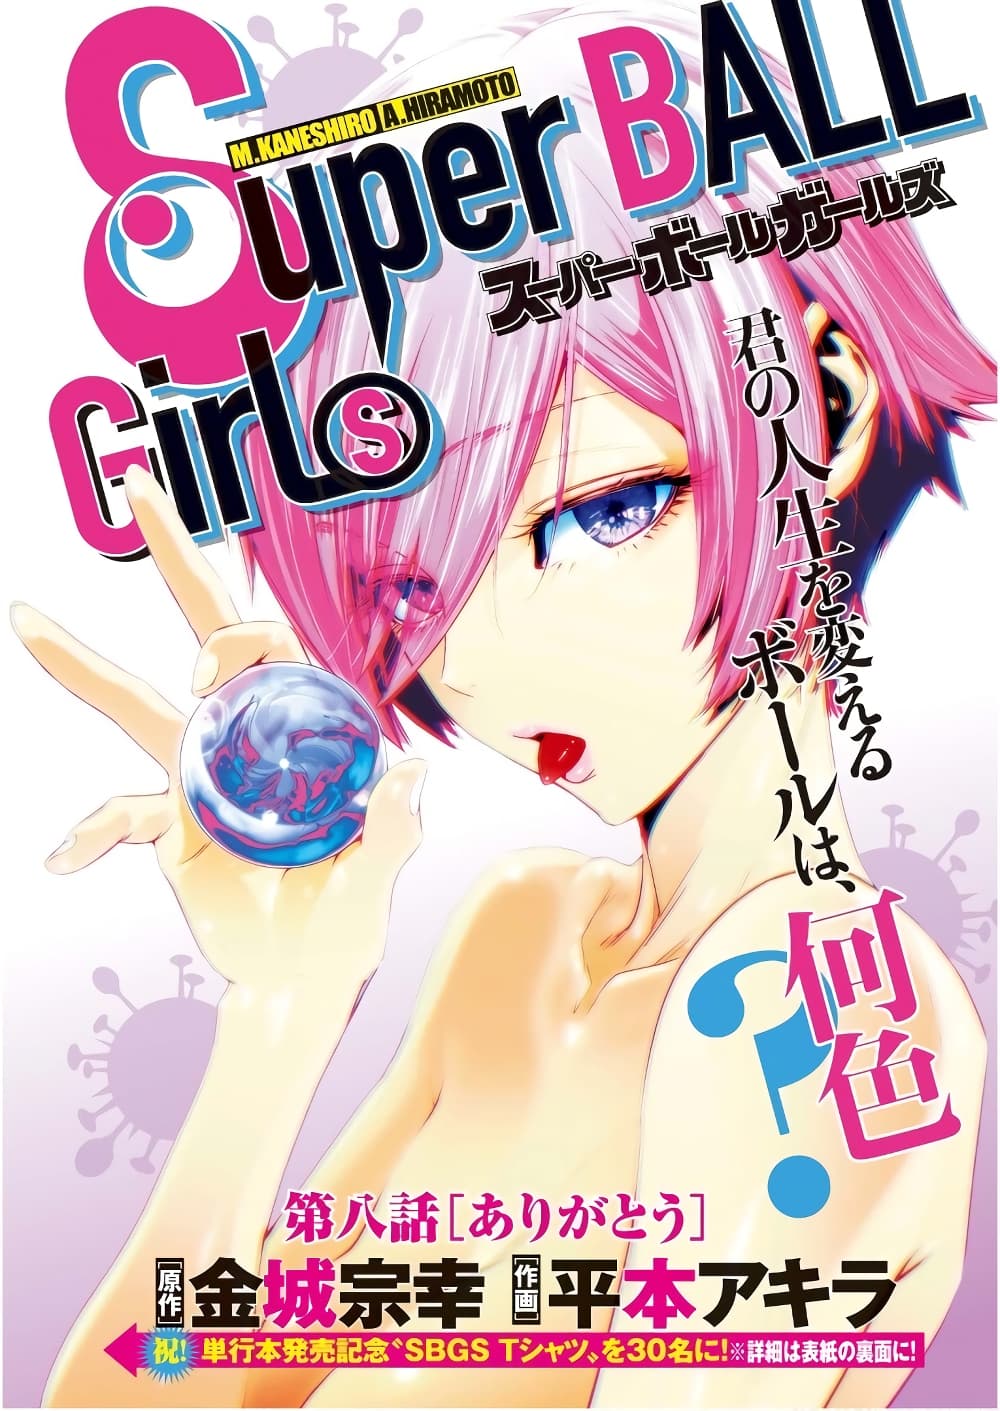 Superball Girl 8 (1)